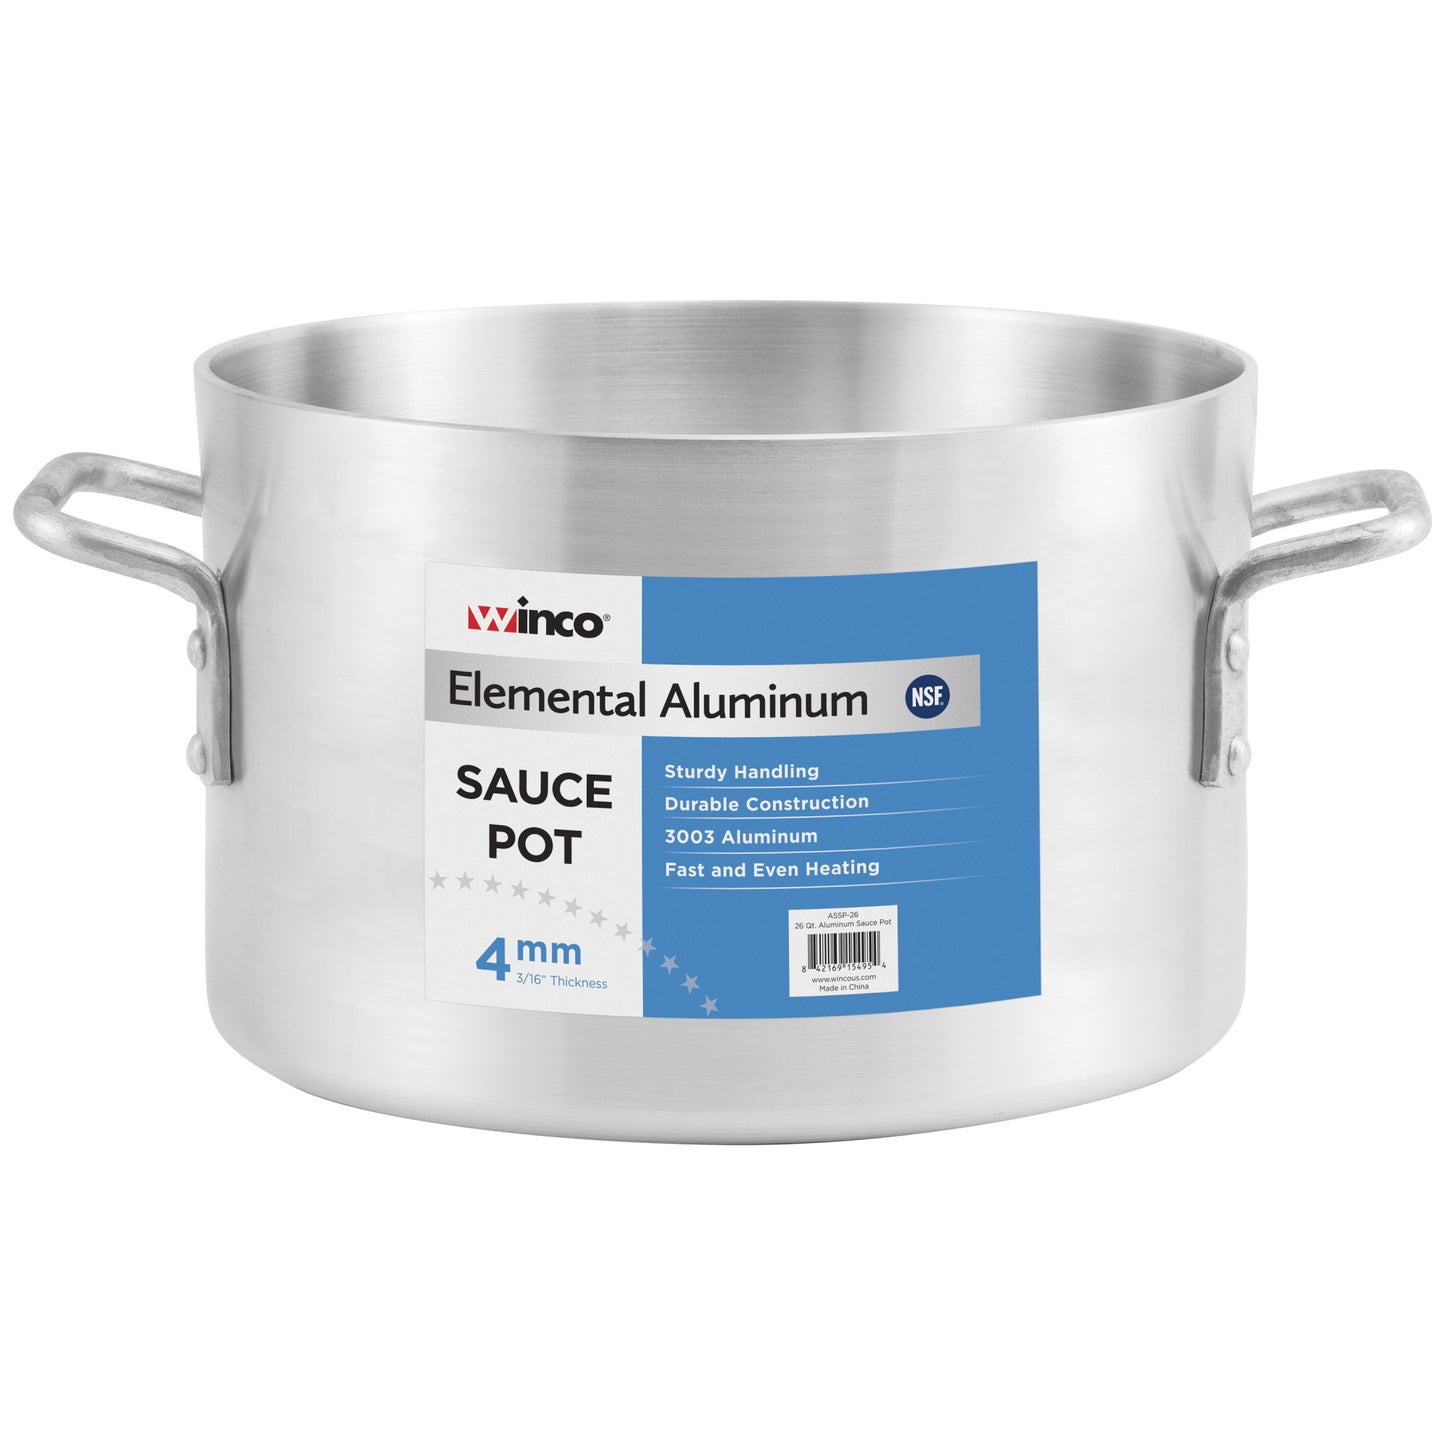 ASSP-26 - Elemental Aluminum Sauce Pot, 4mm - 26 Quart